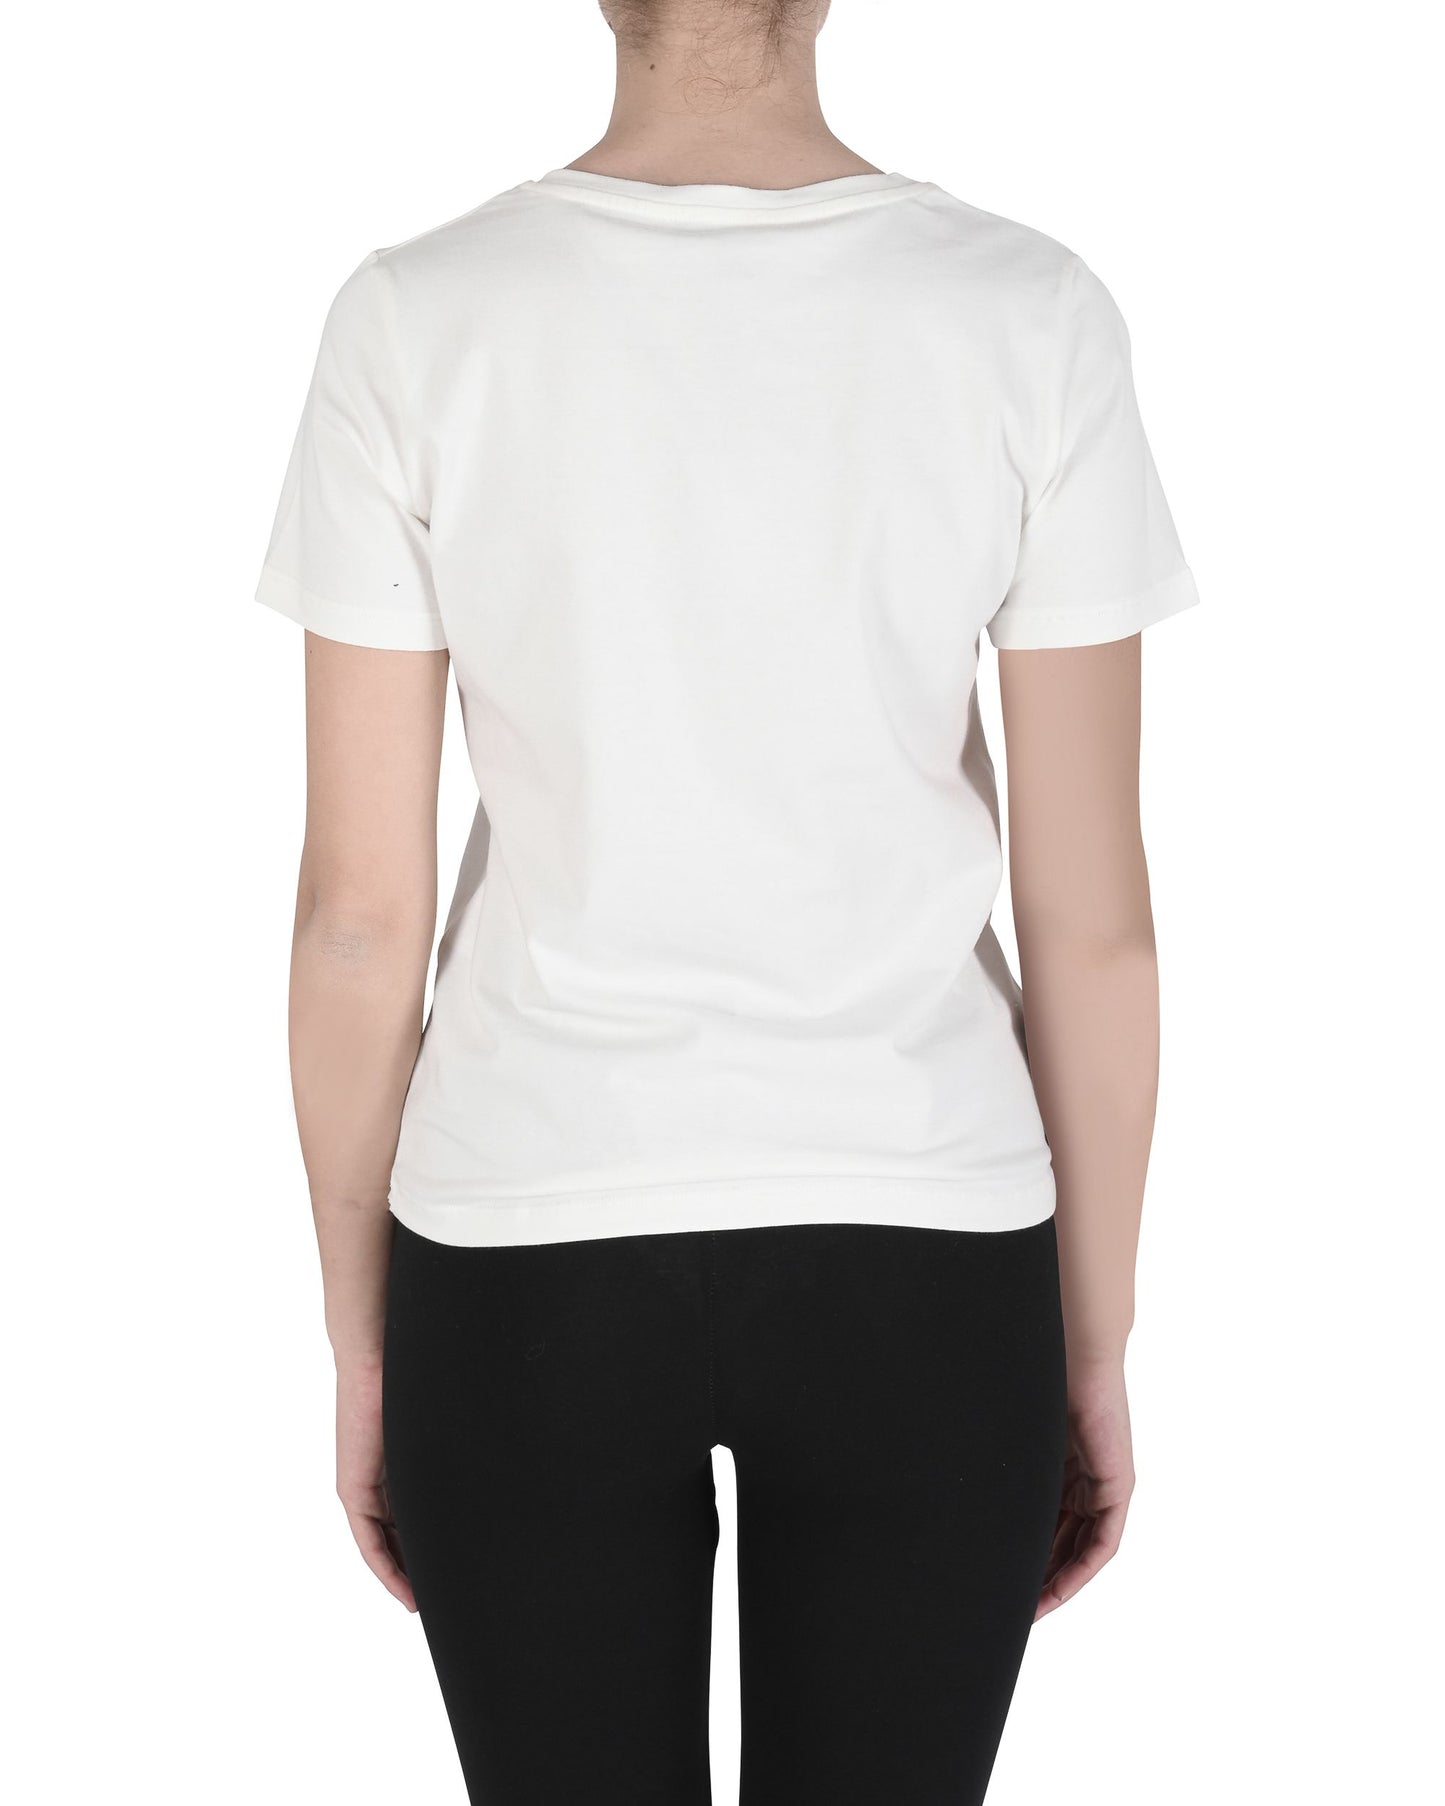 19V69 Italia Womens T-Shirt ALESSANDRA WHITE